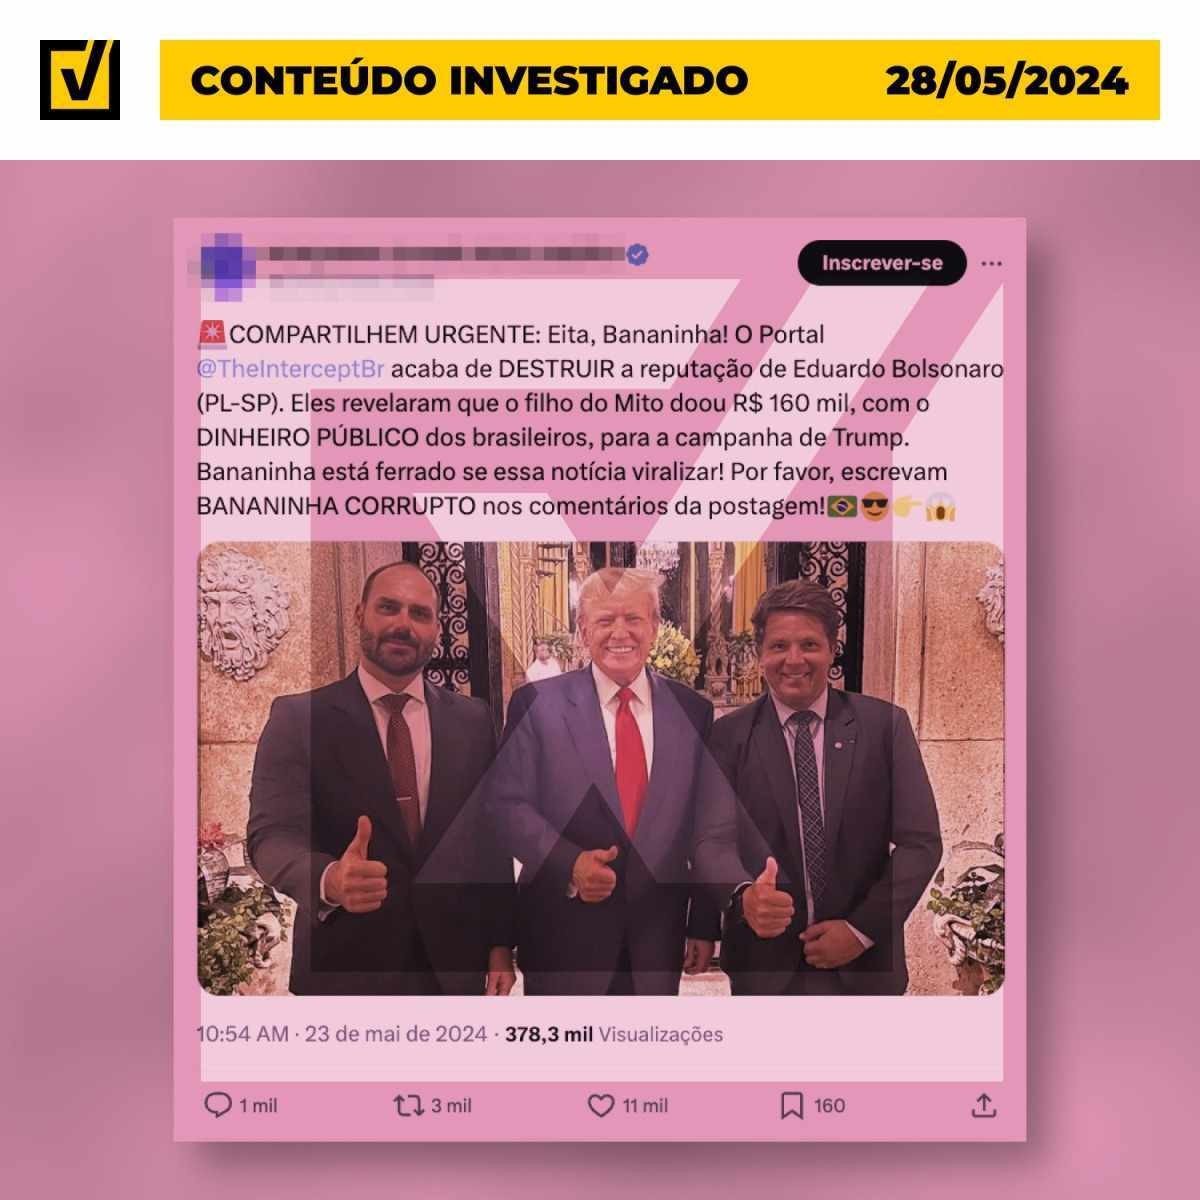 Post distorce reportagem para acusar Eduardo Bolsonaro de doar dinheiro público a Trump